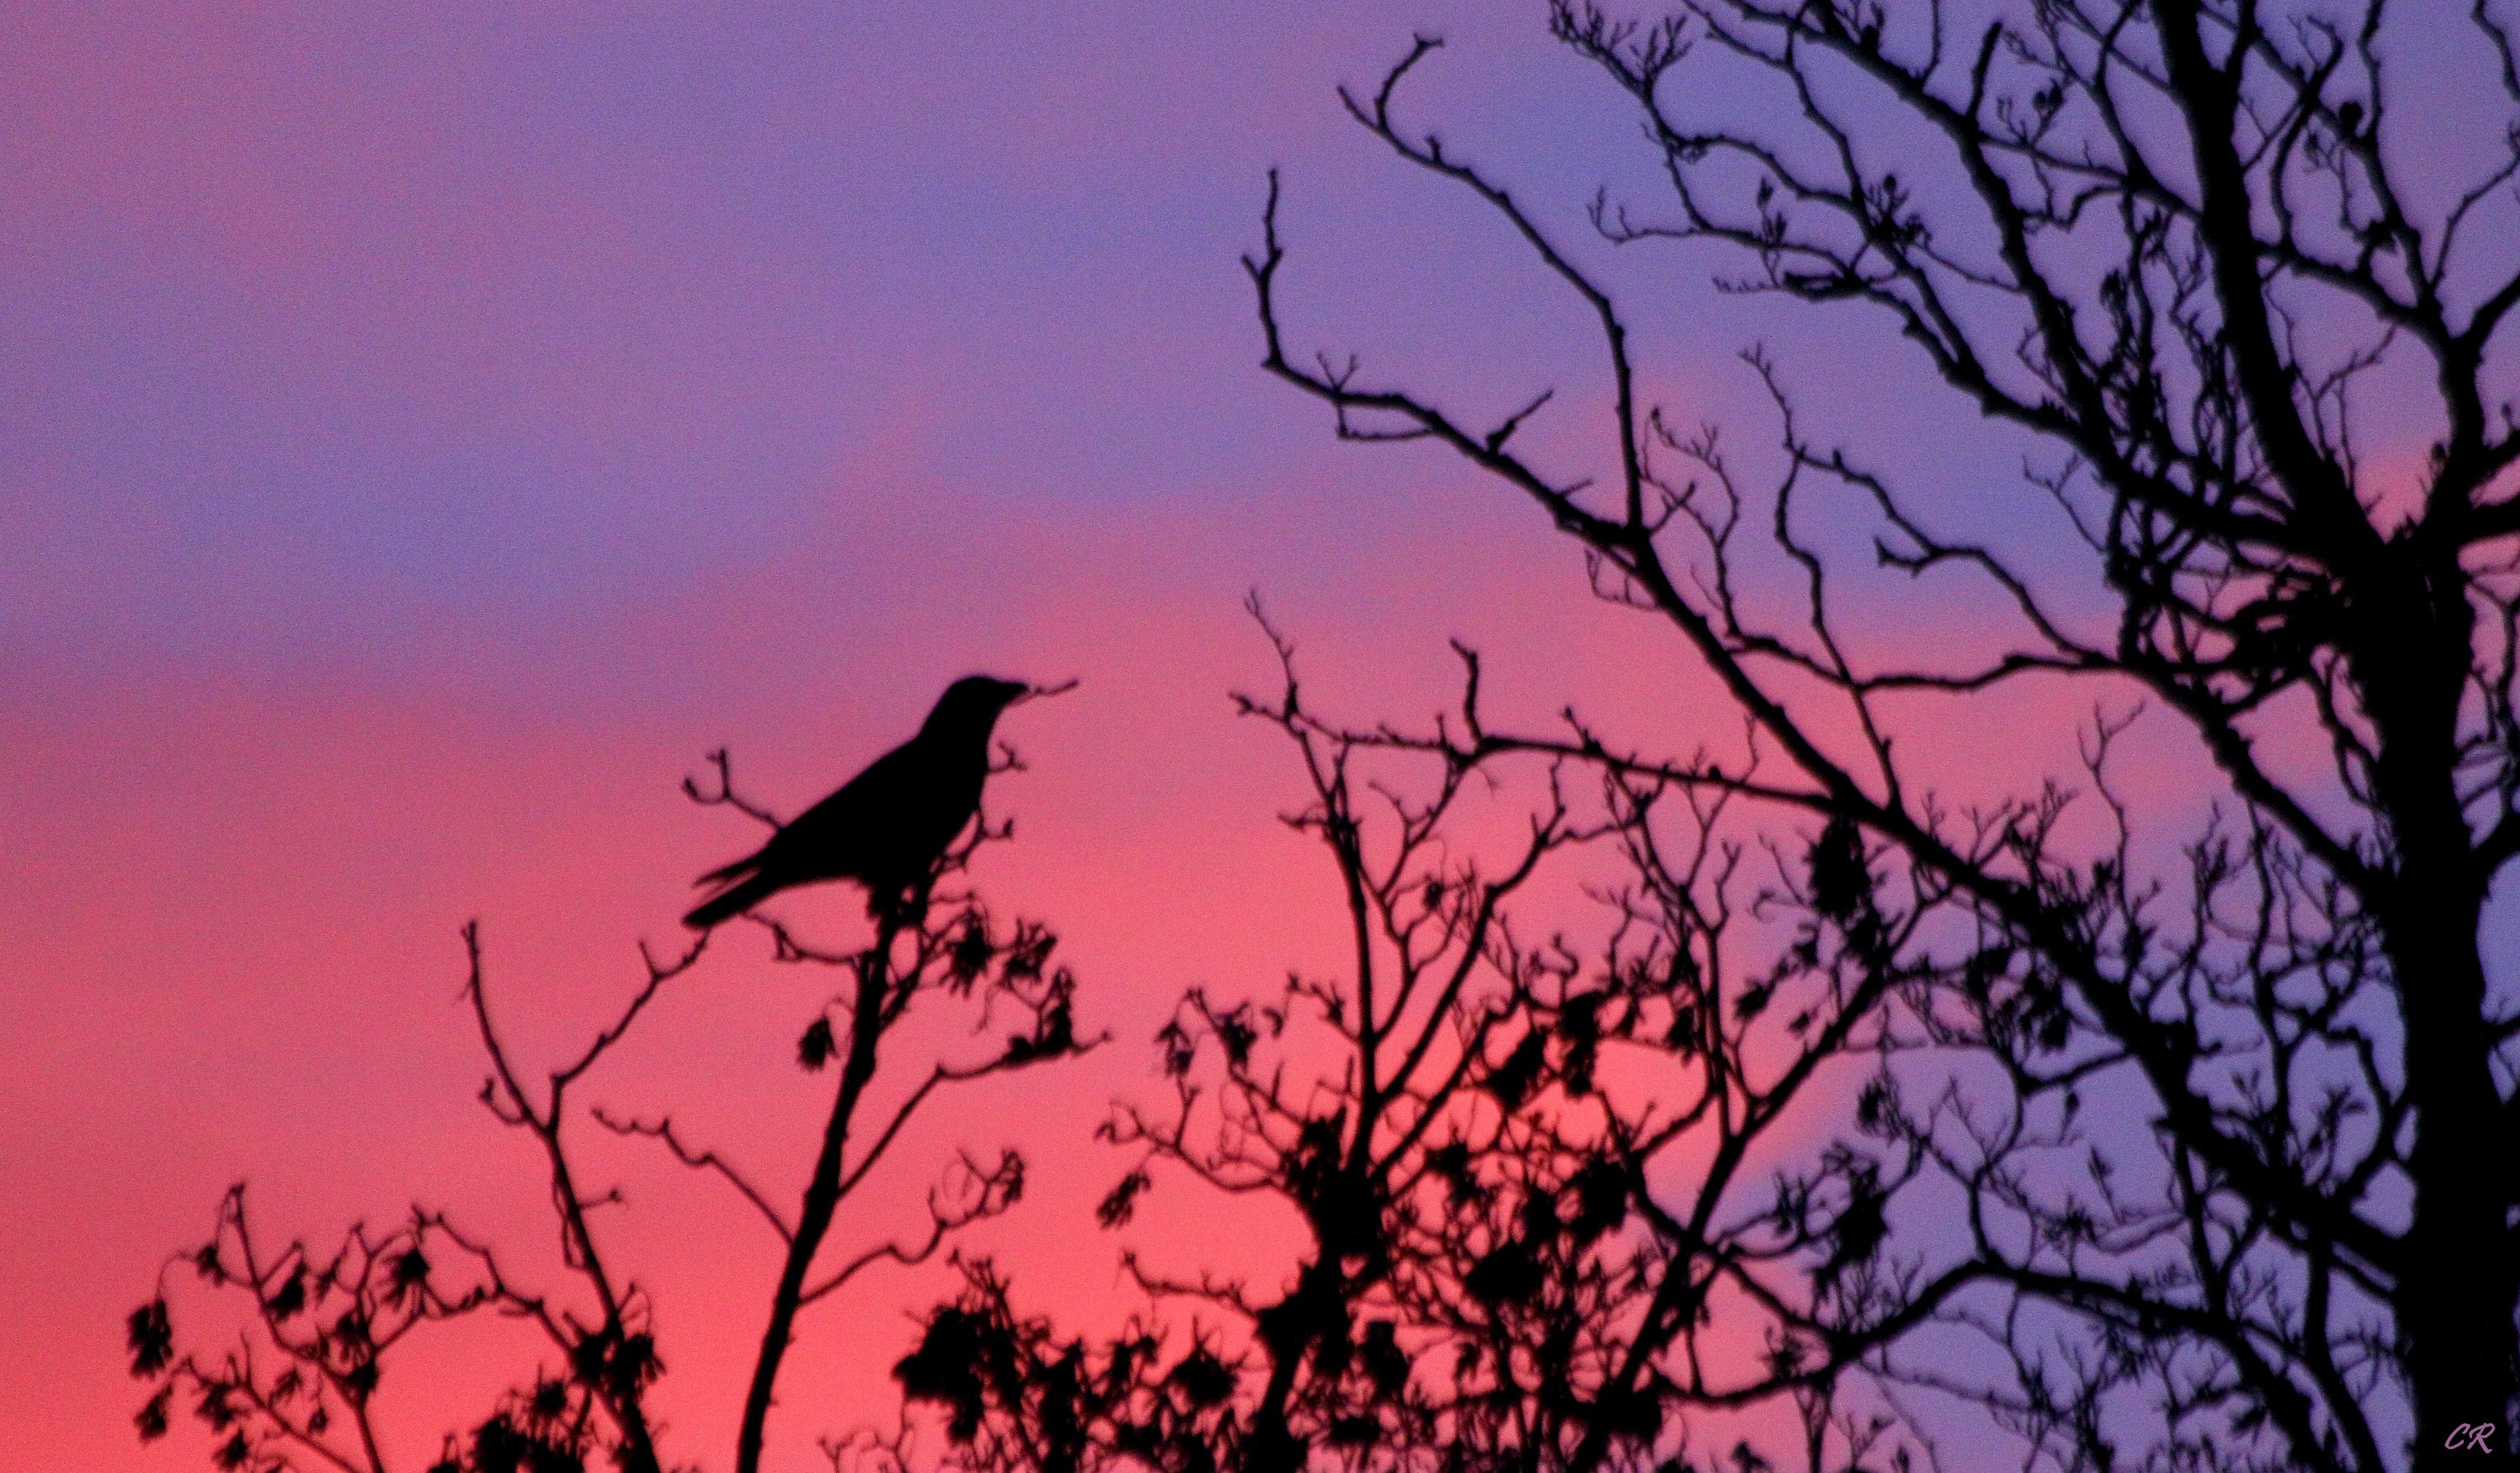 Corbeaux Corbeau sur fond de ciel rougeoyant